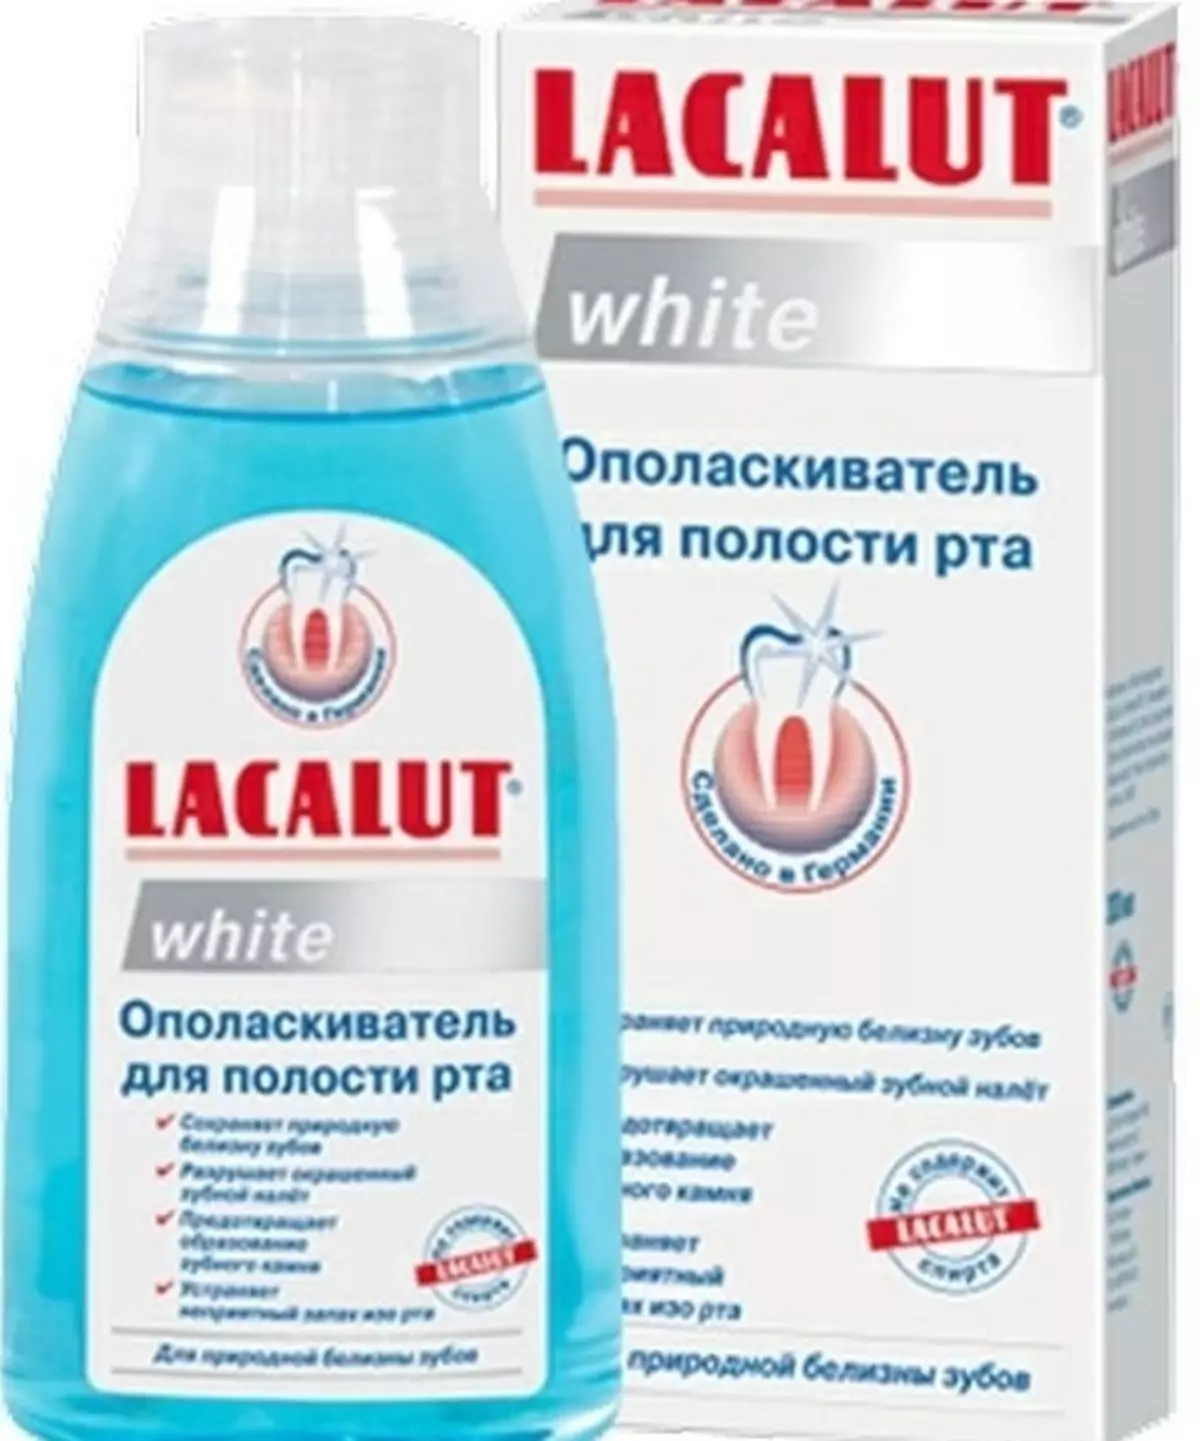 Rinsers Lacalut: Aktiv, ευαίσθητο και λευκό για την στοματική κοιλότητα, τη σύνθεση και τα χαρακτηριστικά της εφαρμογής 24087_12